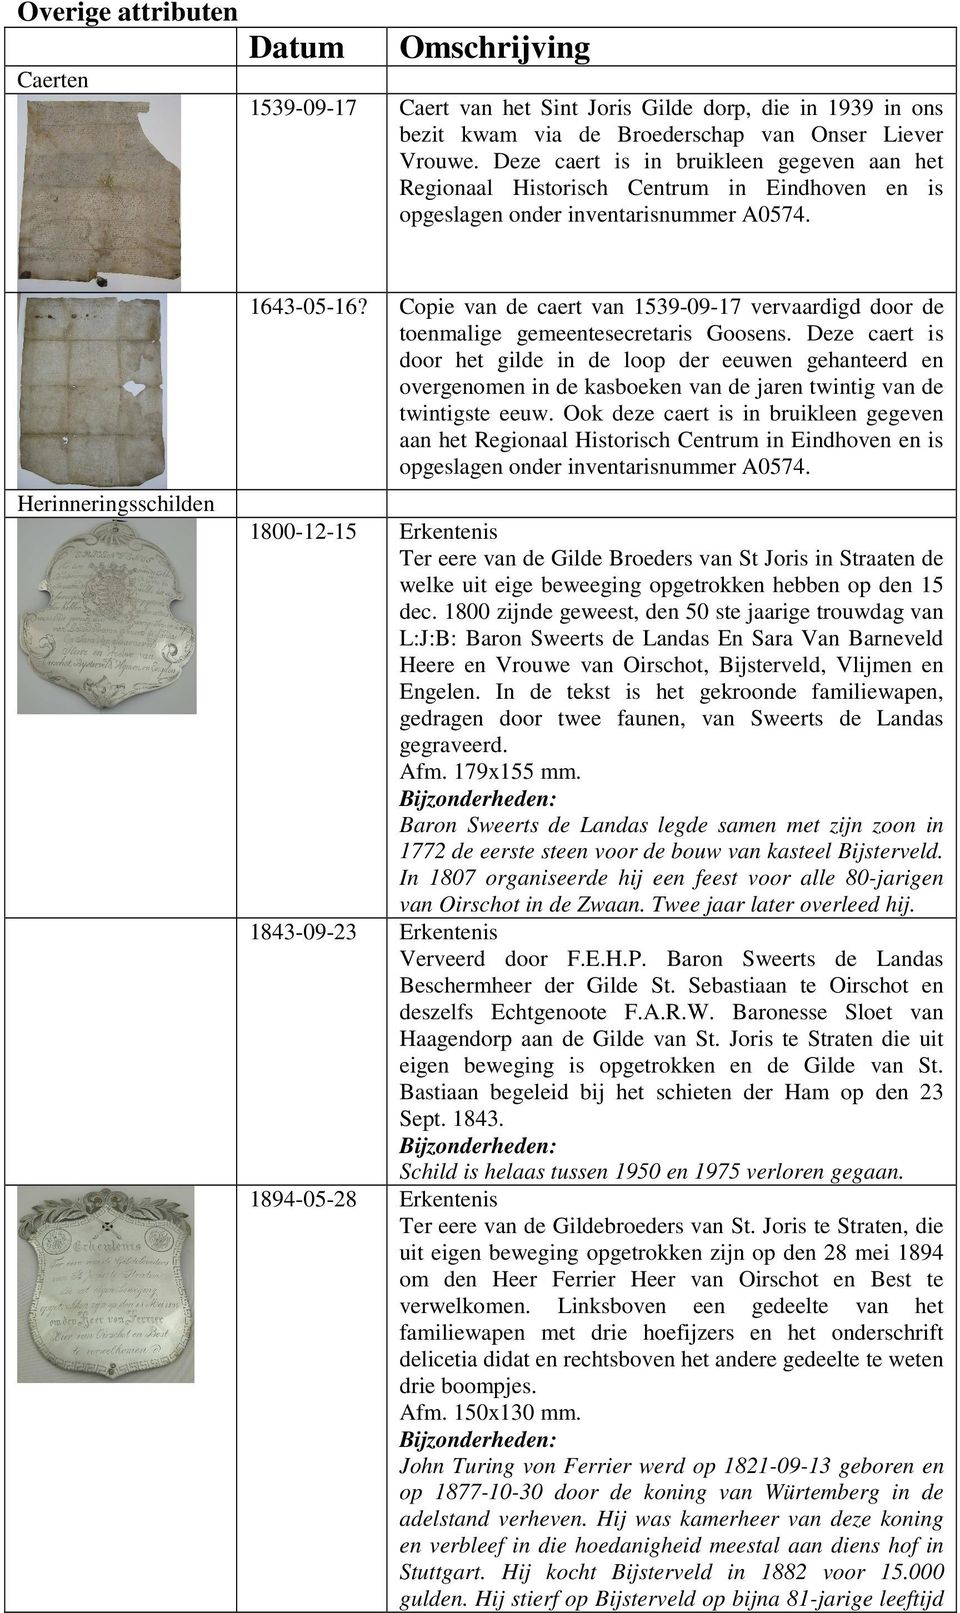 Copie van de caert van 1539-09-17 vervaardigd door de toenmalige gemeentesecretaris Goosens.